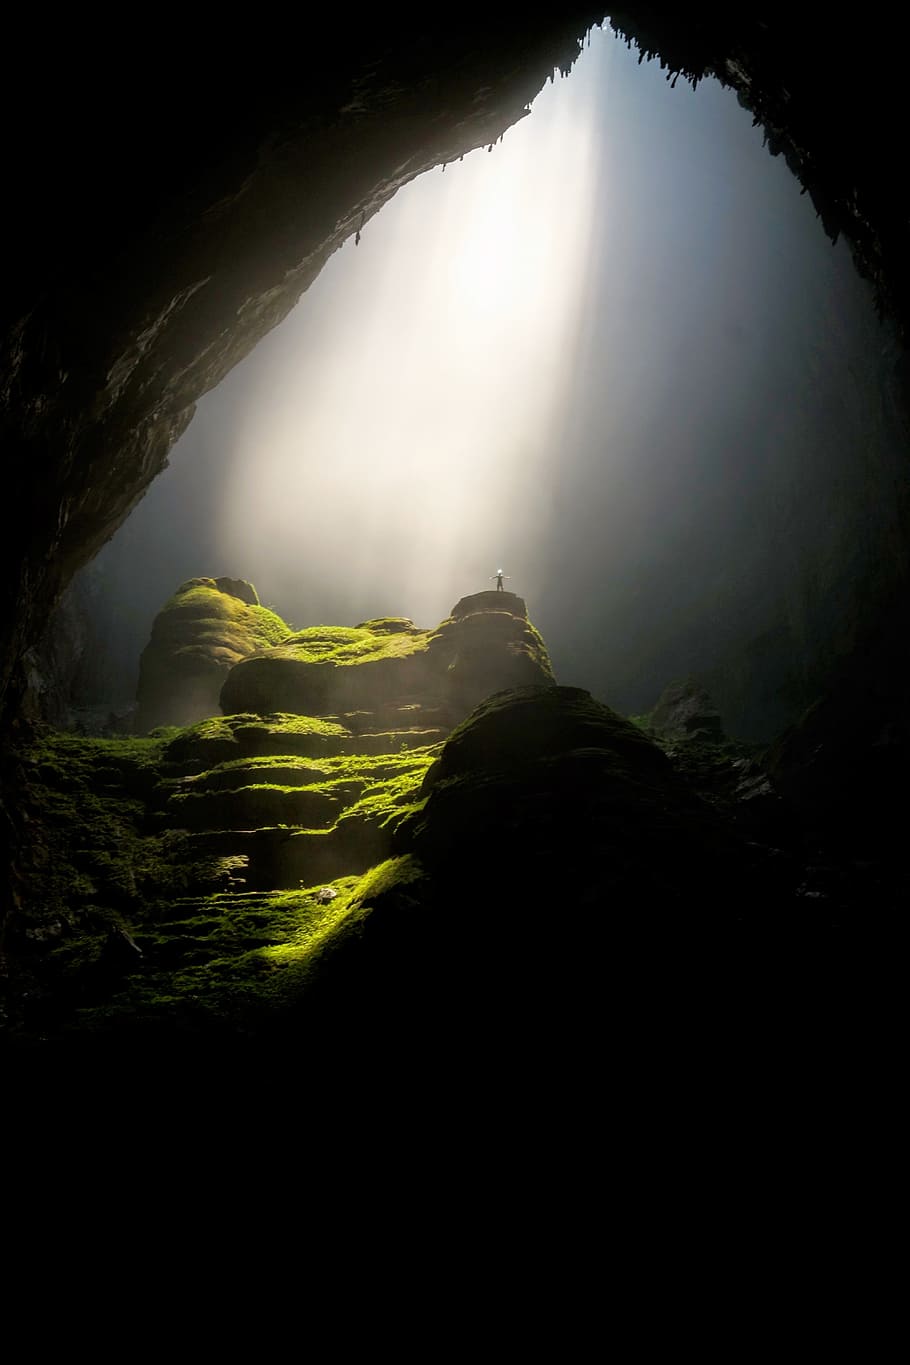 natureza, caverna, subterrânea, sombras, luz, raios, luxuriante, vegetação, terraços, tranquilidade